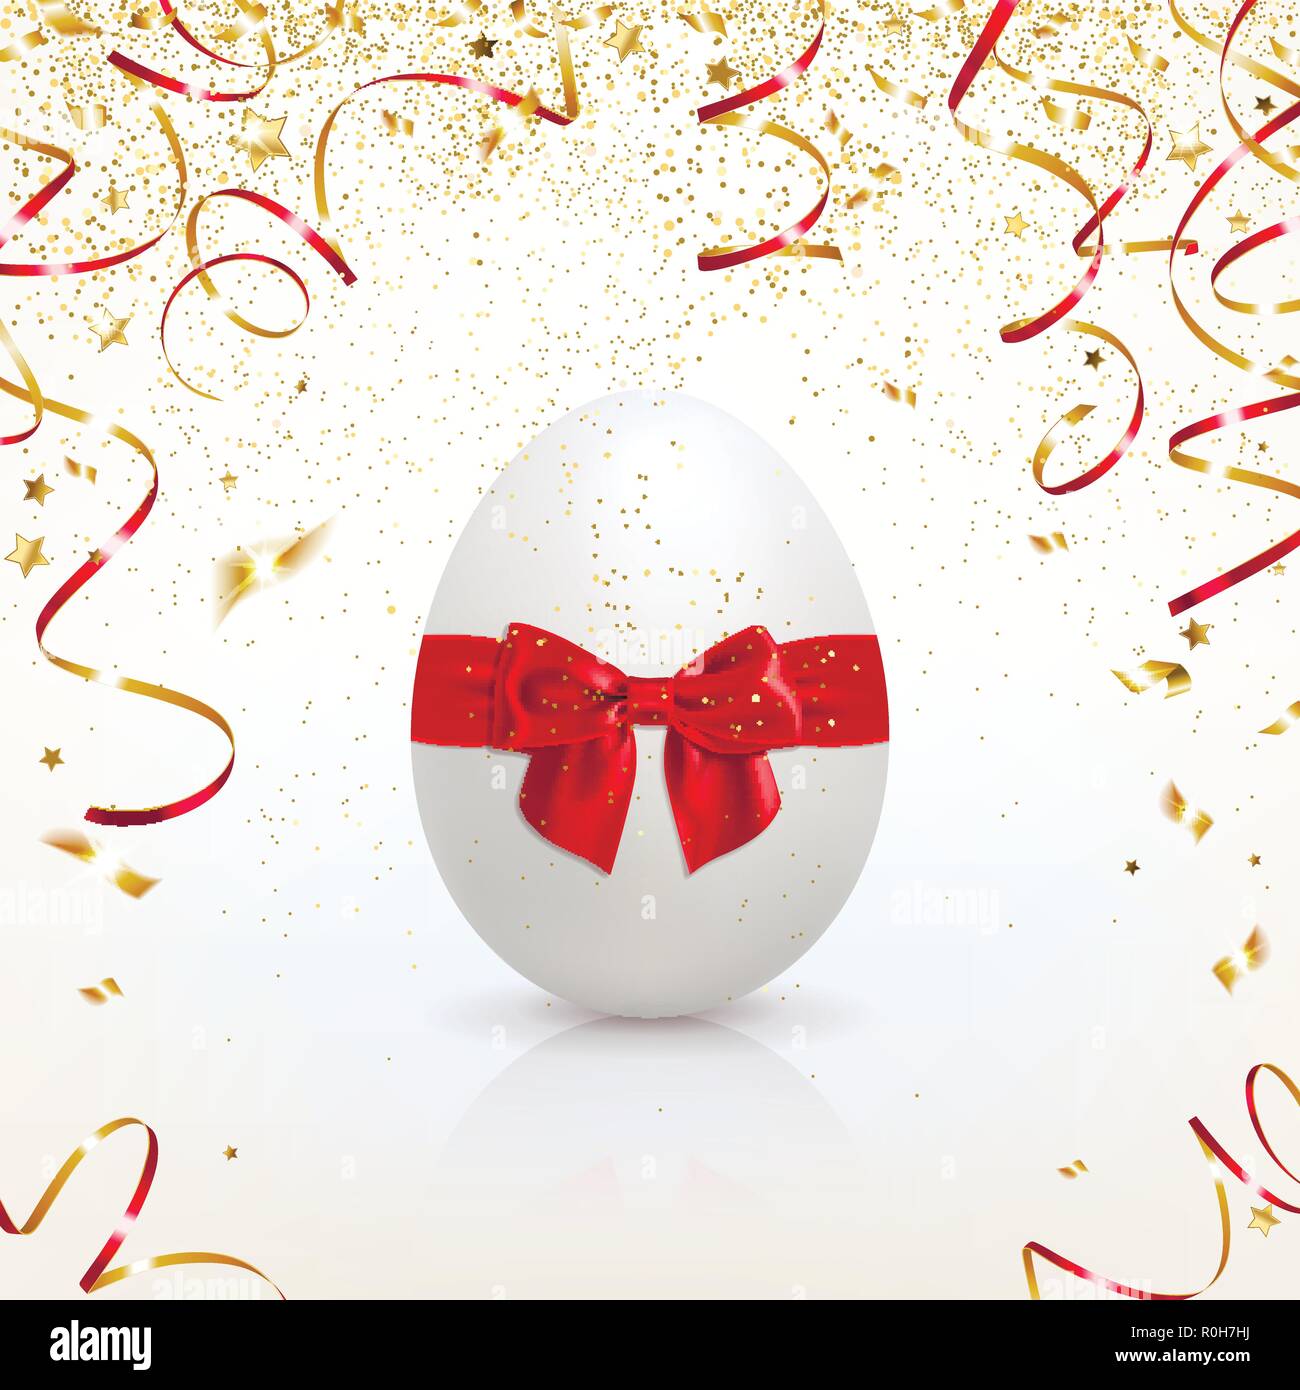 Biglietto di auguri con uovo di pasqua e confetti d'oro su sfondo chiaro Illustrazione Vettoriale